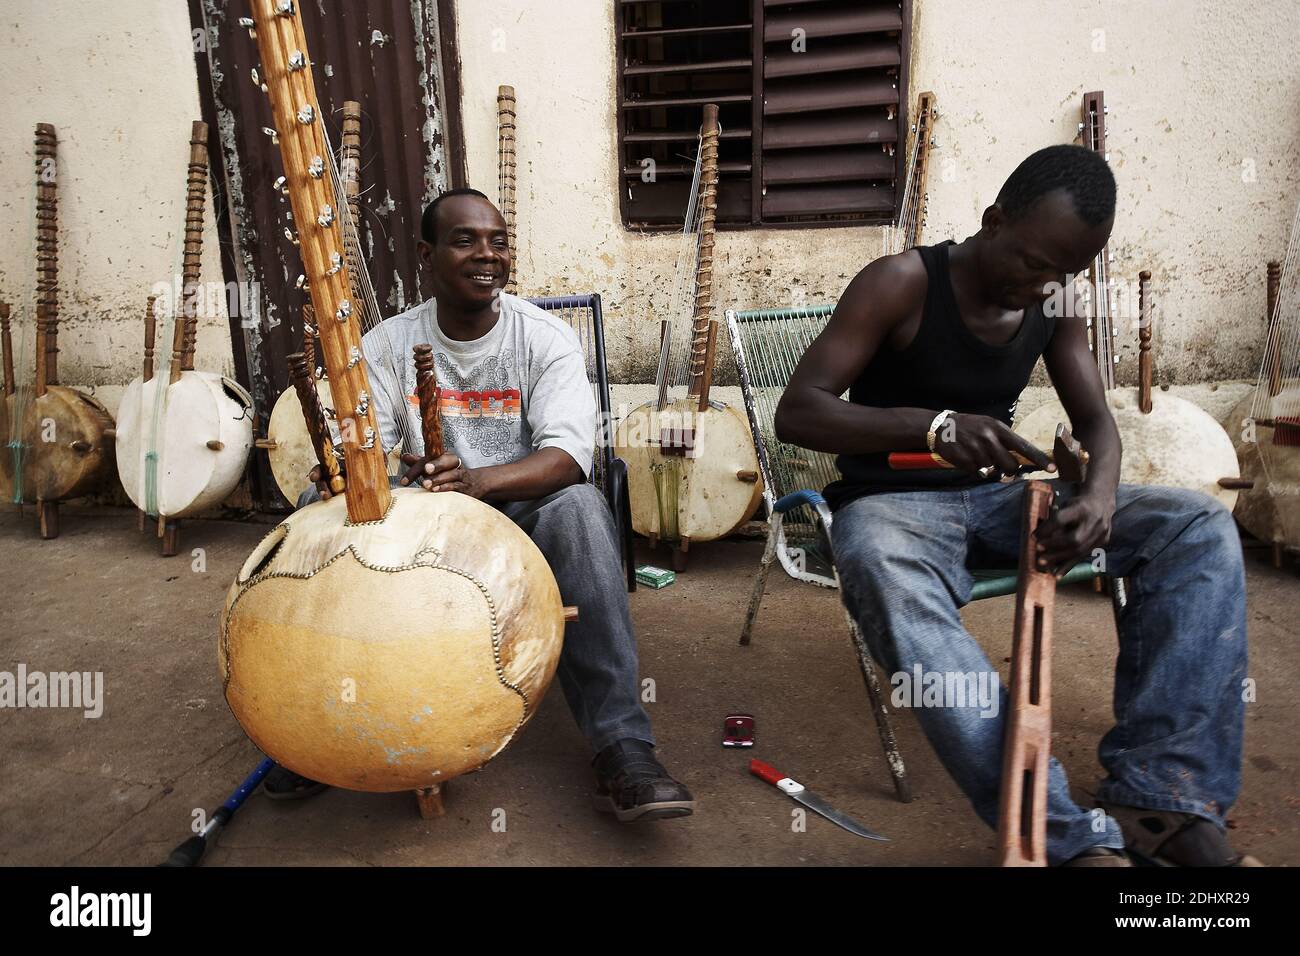 Toumani Diabaté ist ein malischer Kora-Spieler, der für seine Musik internationale Anerkennung erlangt hat. Bamako, Mali, Westafrika. Stockfoto